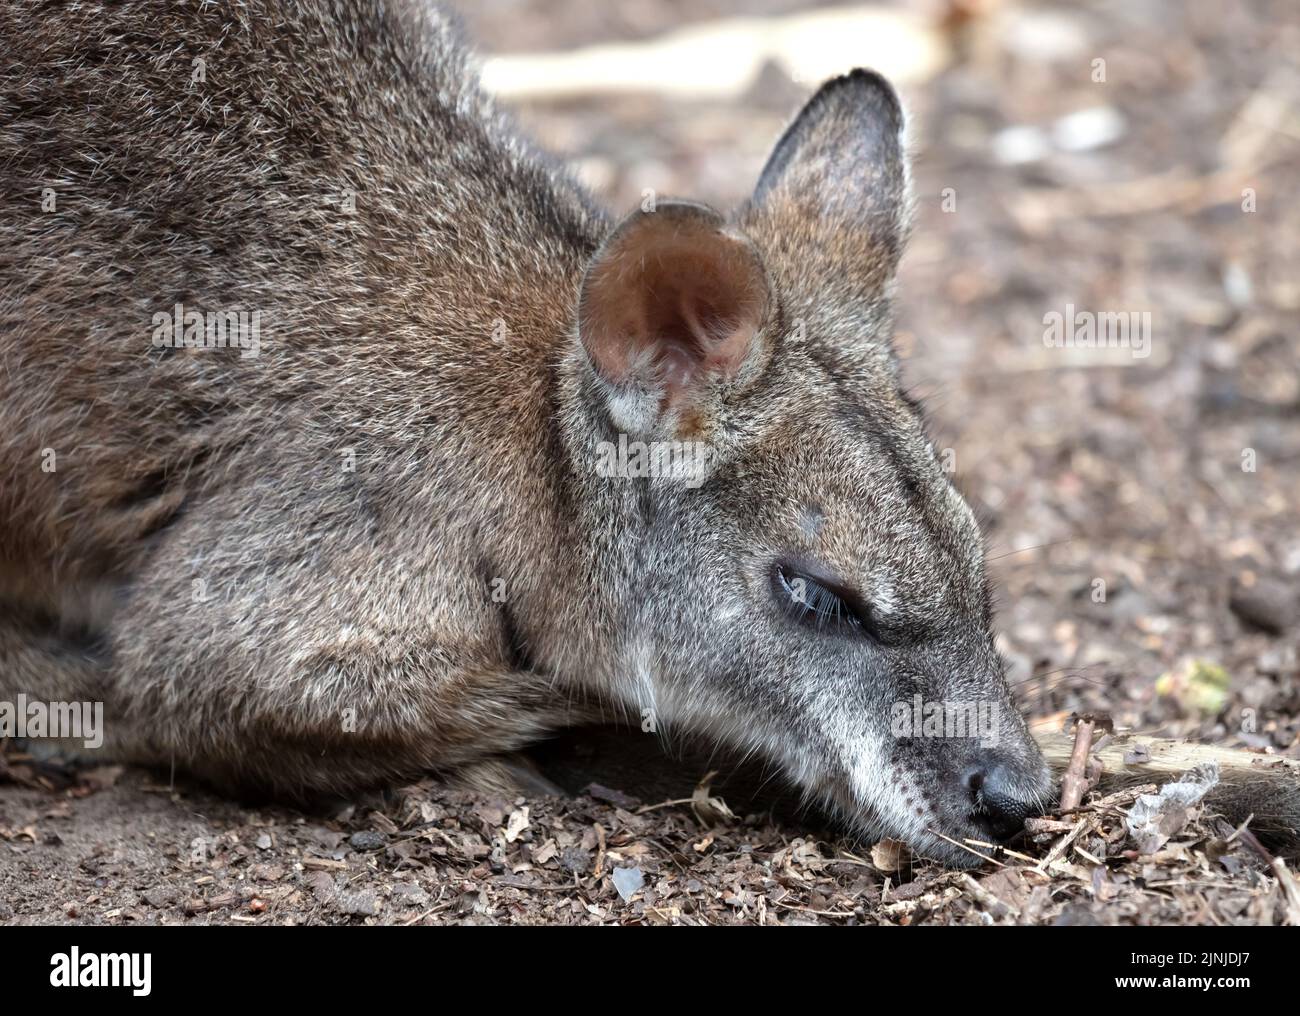 parma durmiente wallaby, enfoque selectivo en el ojo Foto de stock